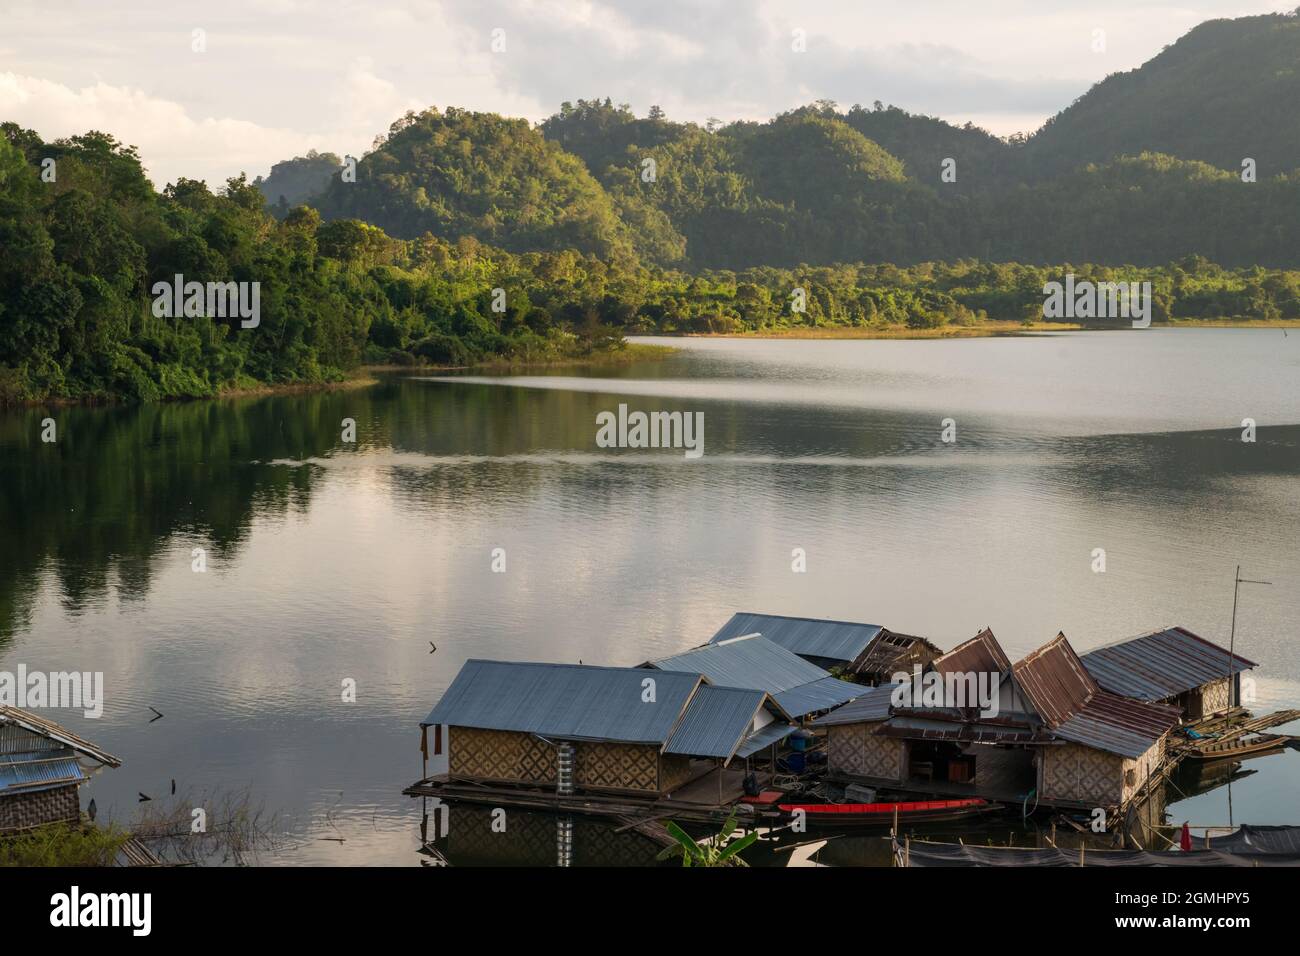 Case galleggianti sul lago Khao Laem vicino alla città tailandese Sangkhla Buri al tramonto. Circondato da foreste e laghi, questo rende un idilliaco surroundin Foto Stock